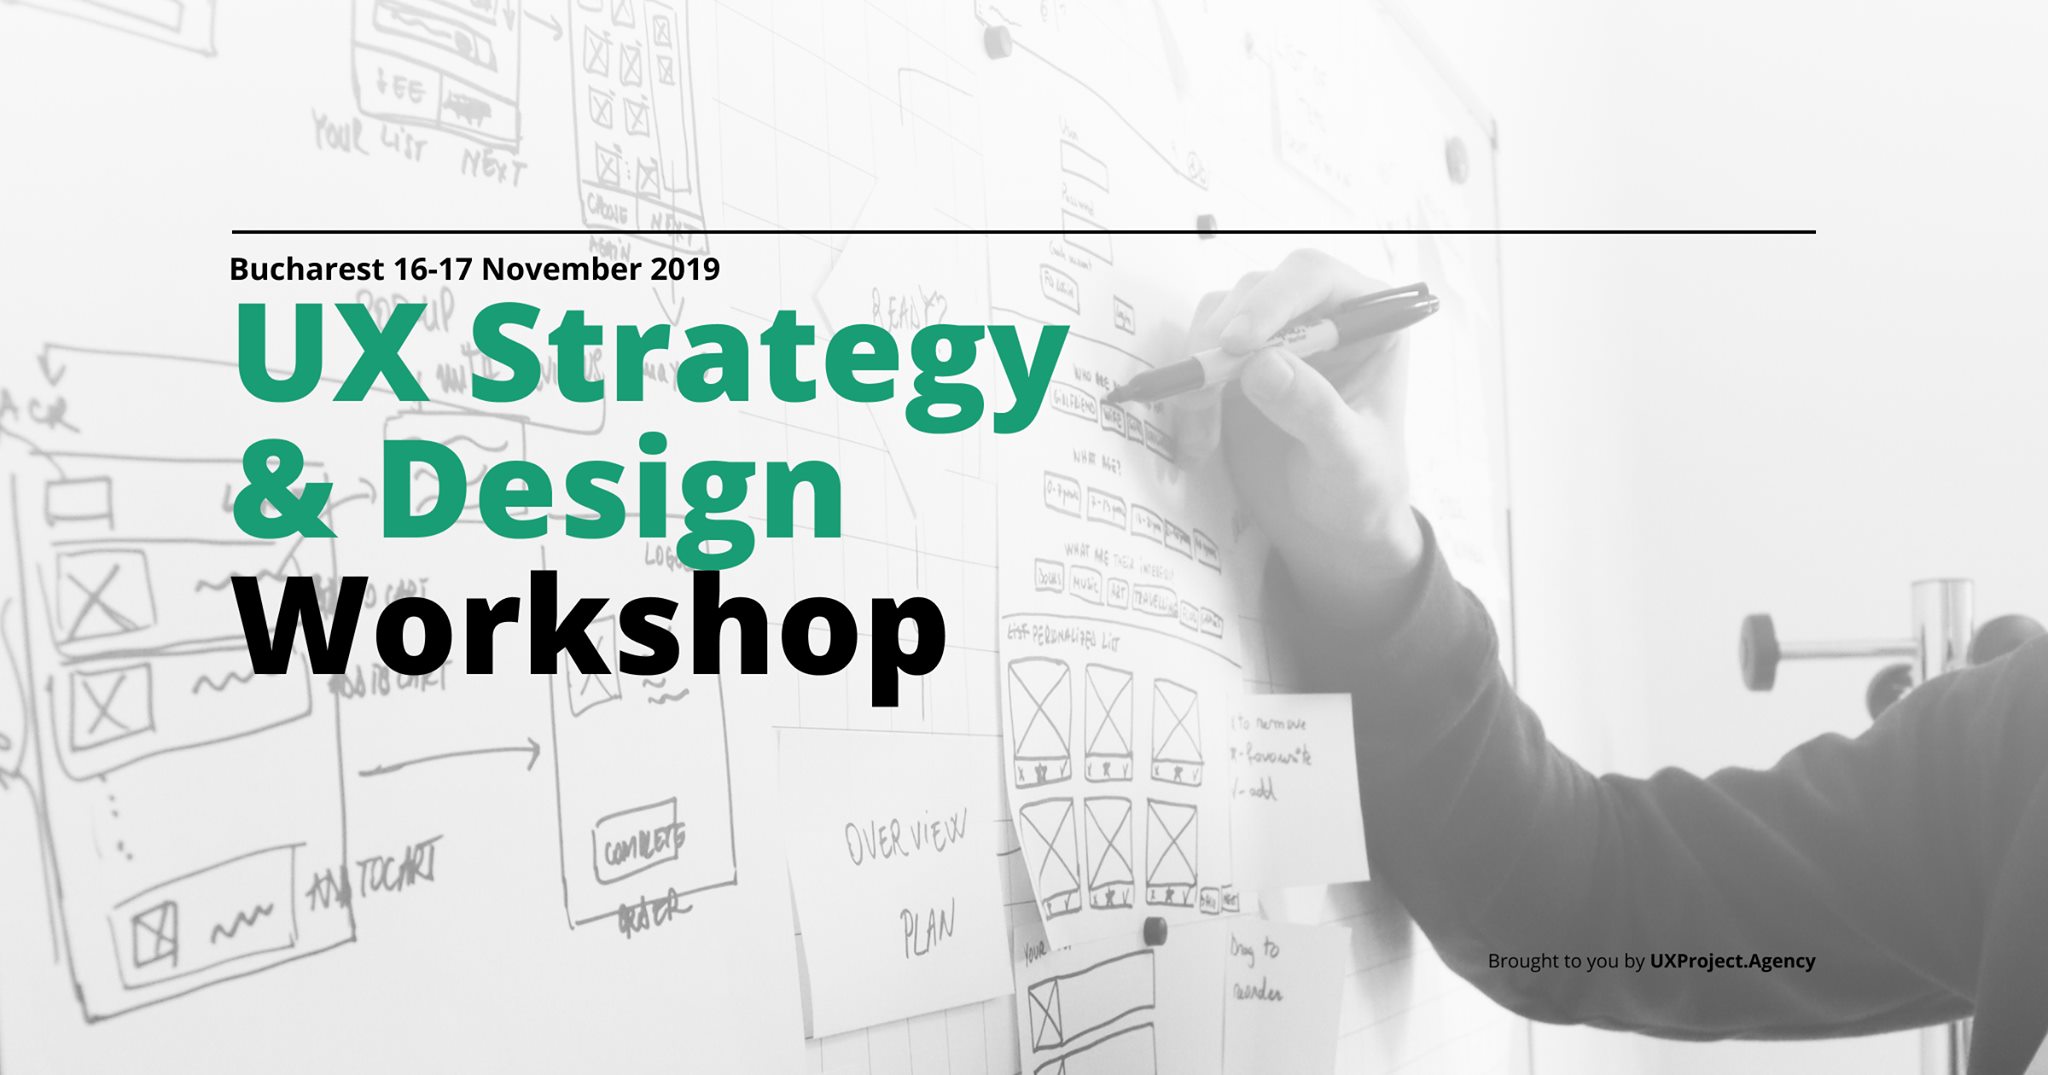 UX Strategy & Design Workshop